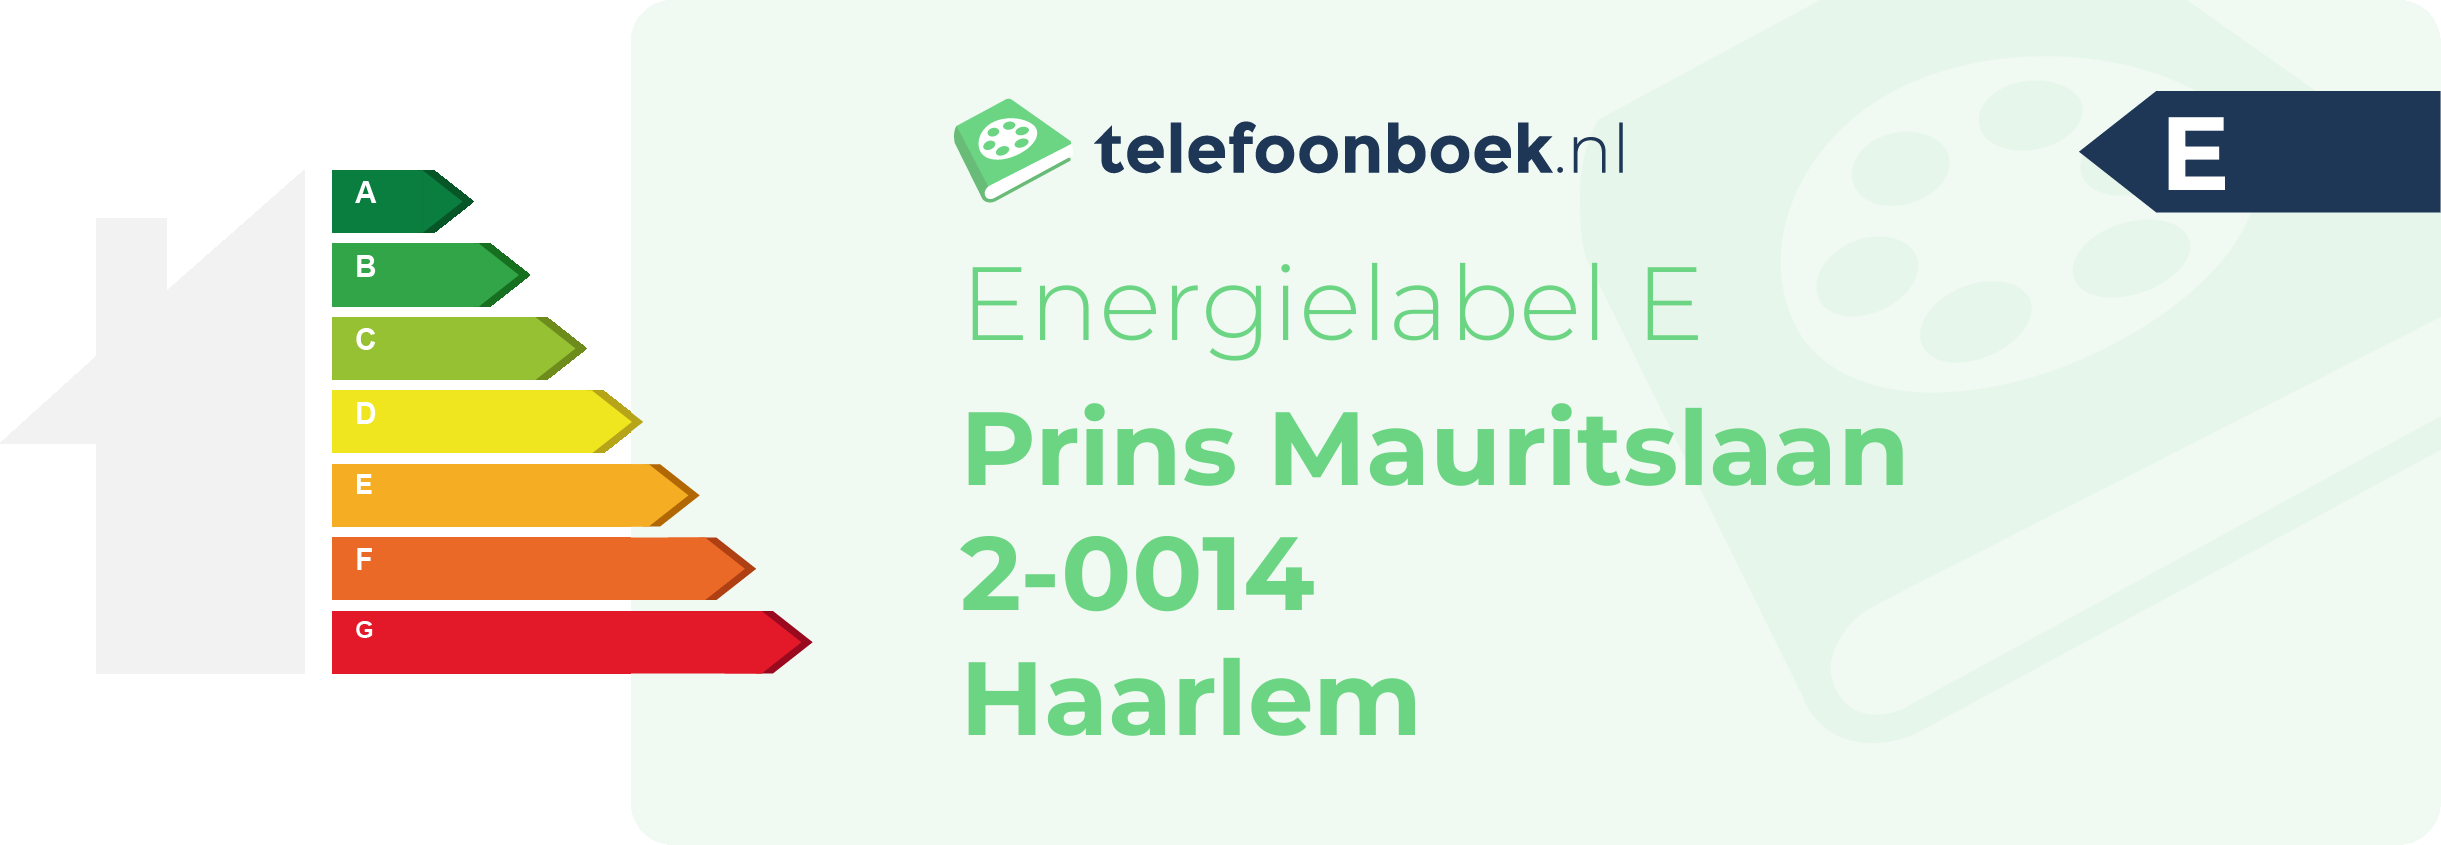 Energielabel Prins Mauritslaan 2-0014 Haarlem